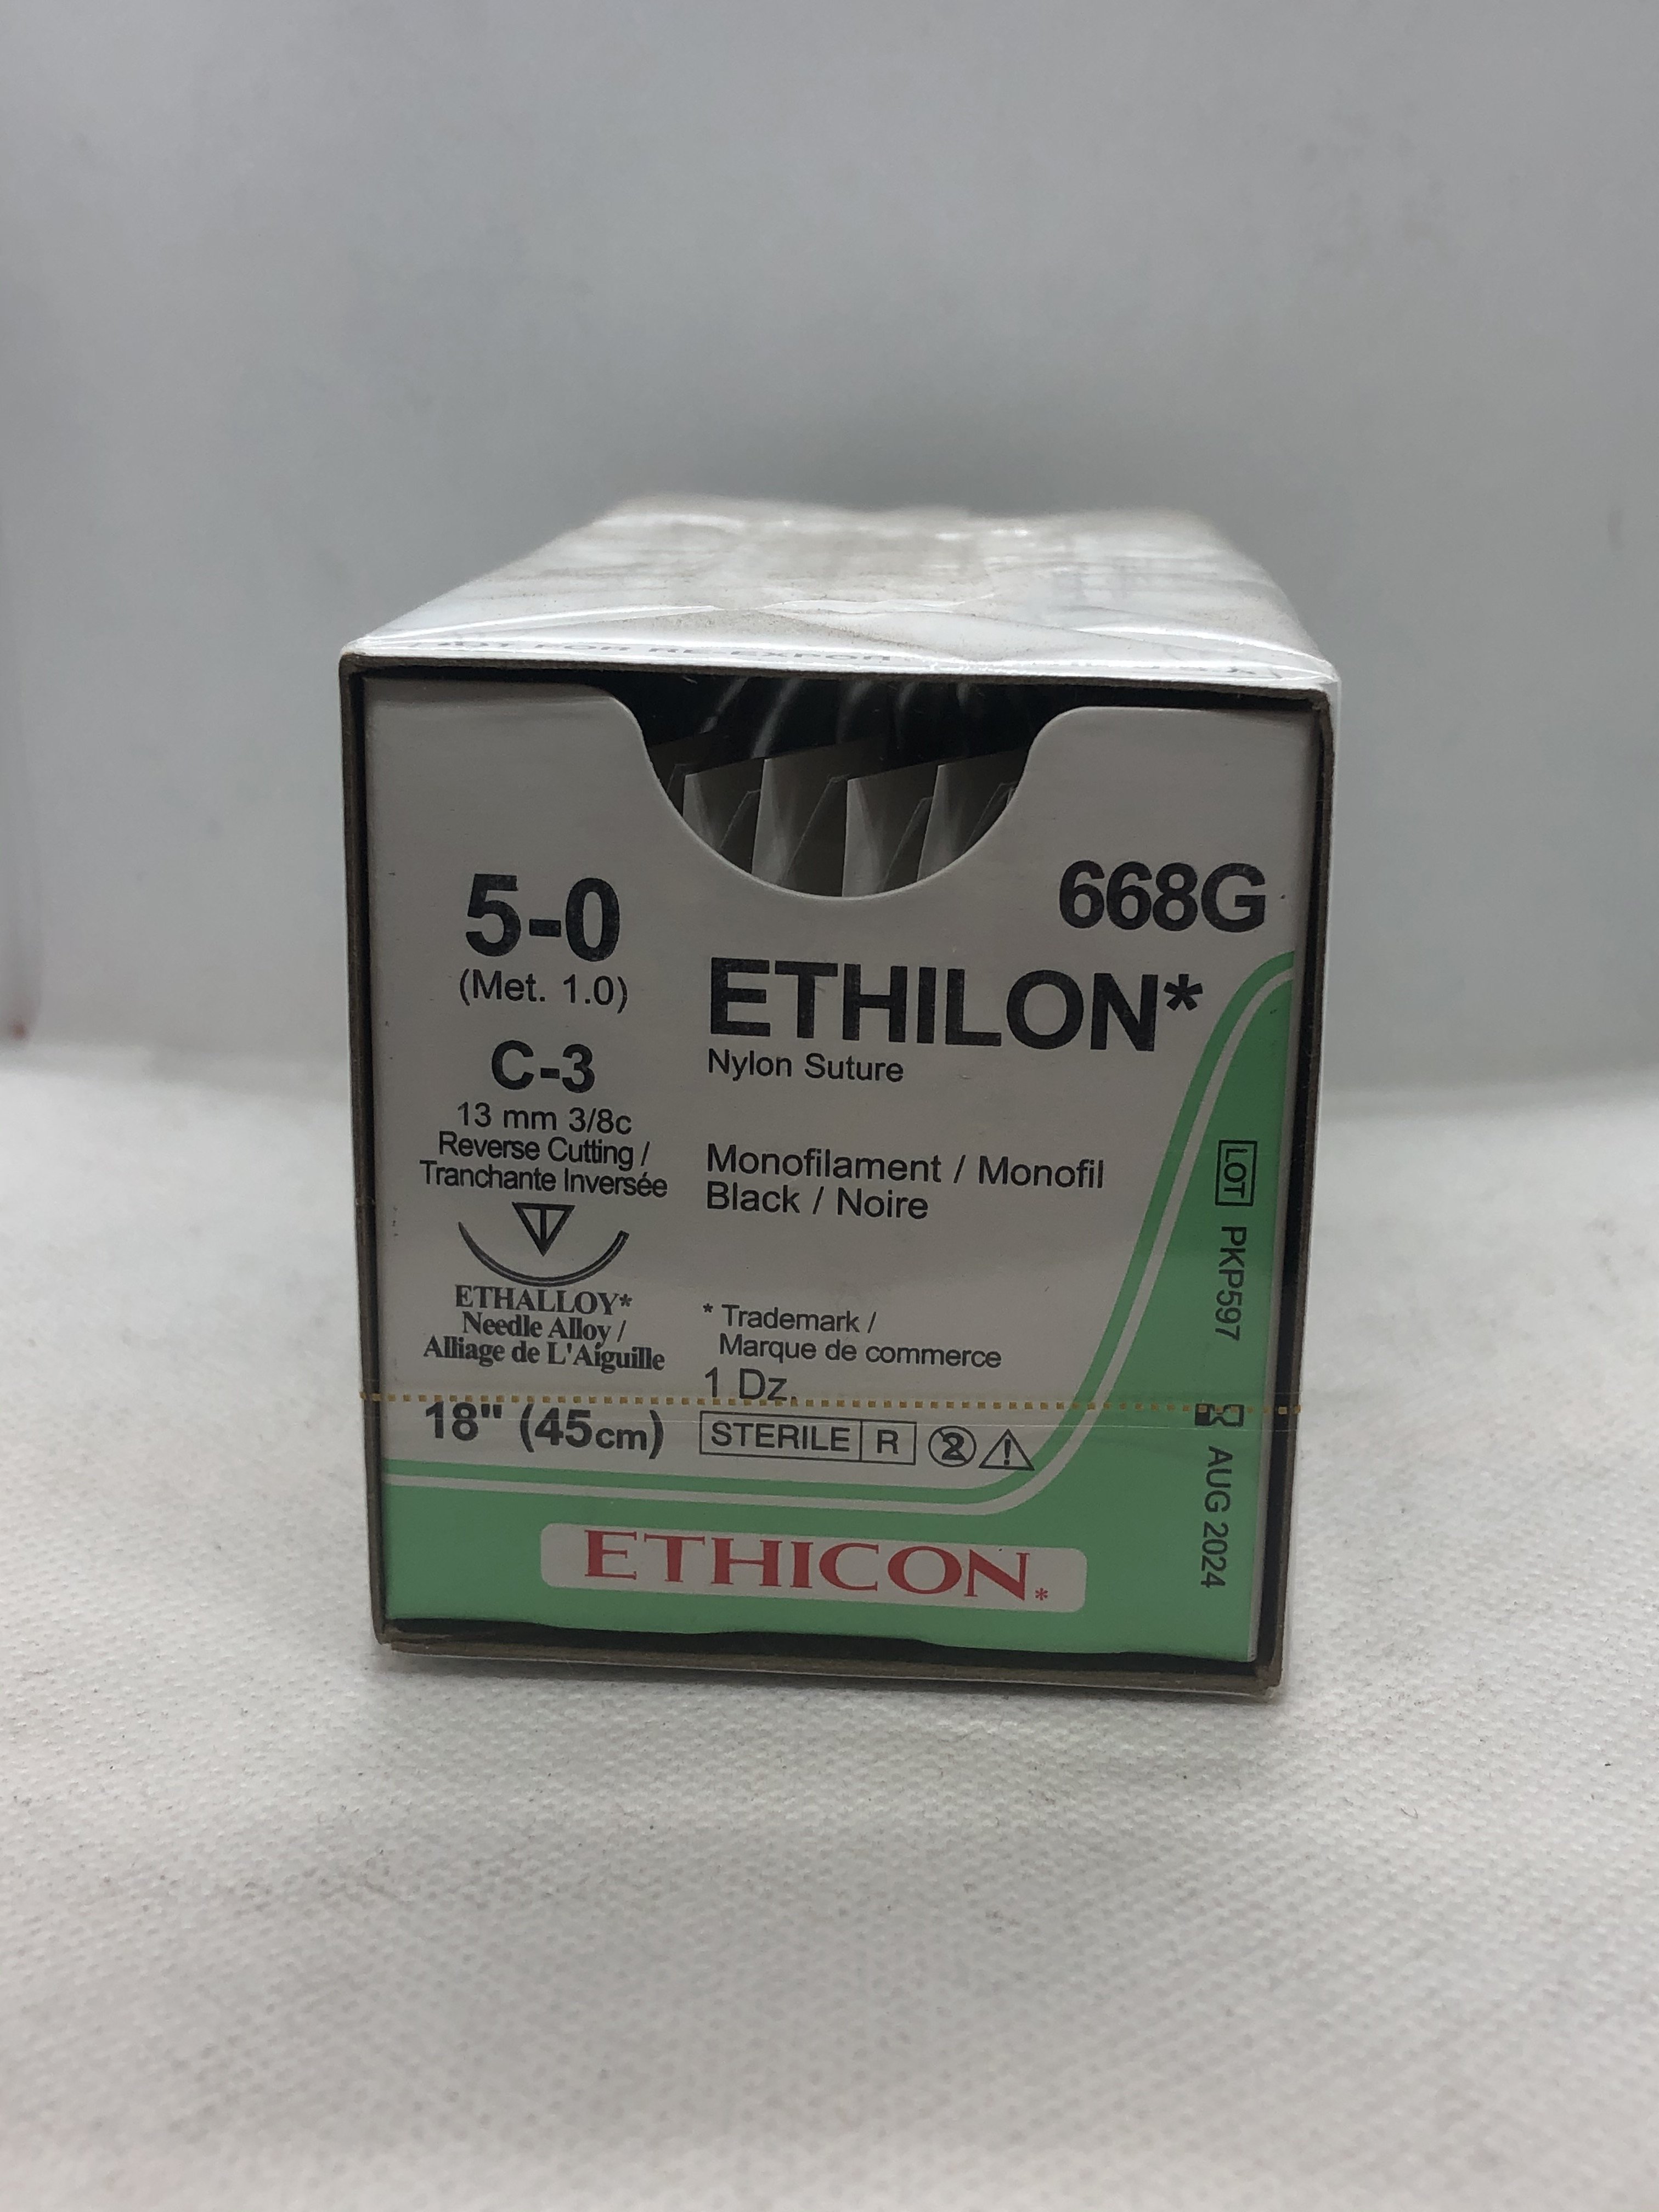 ETHICON ETHILON NYLON SUTURE 5/0 C-3 13MM 3/8C 45CM, 12